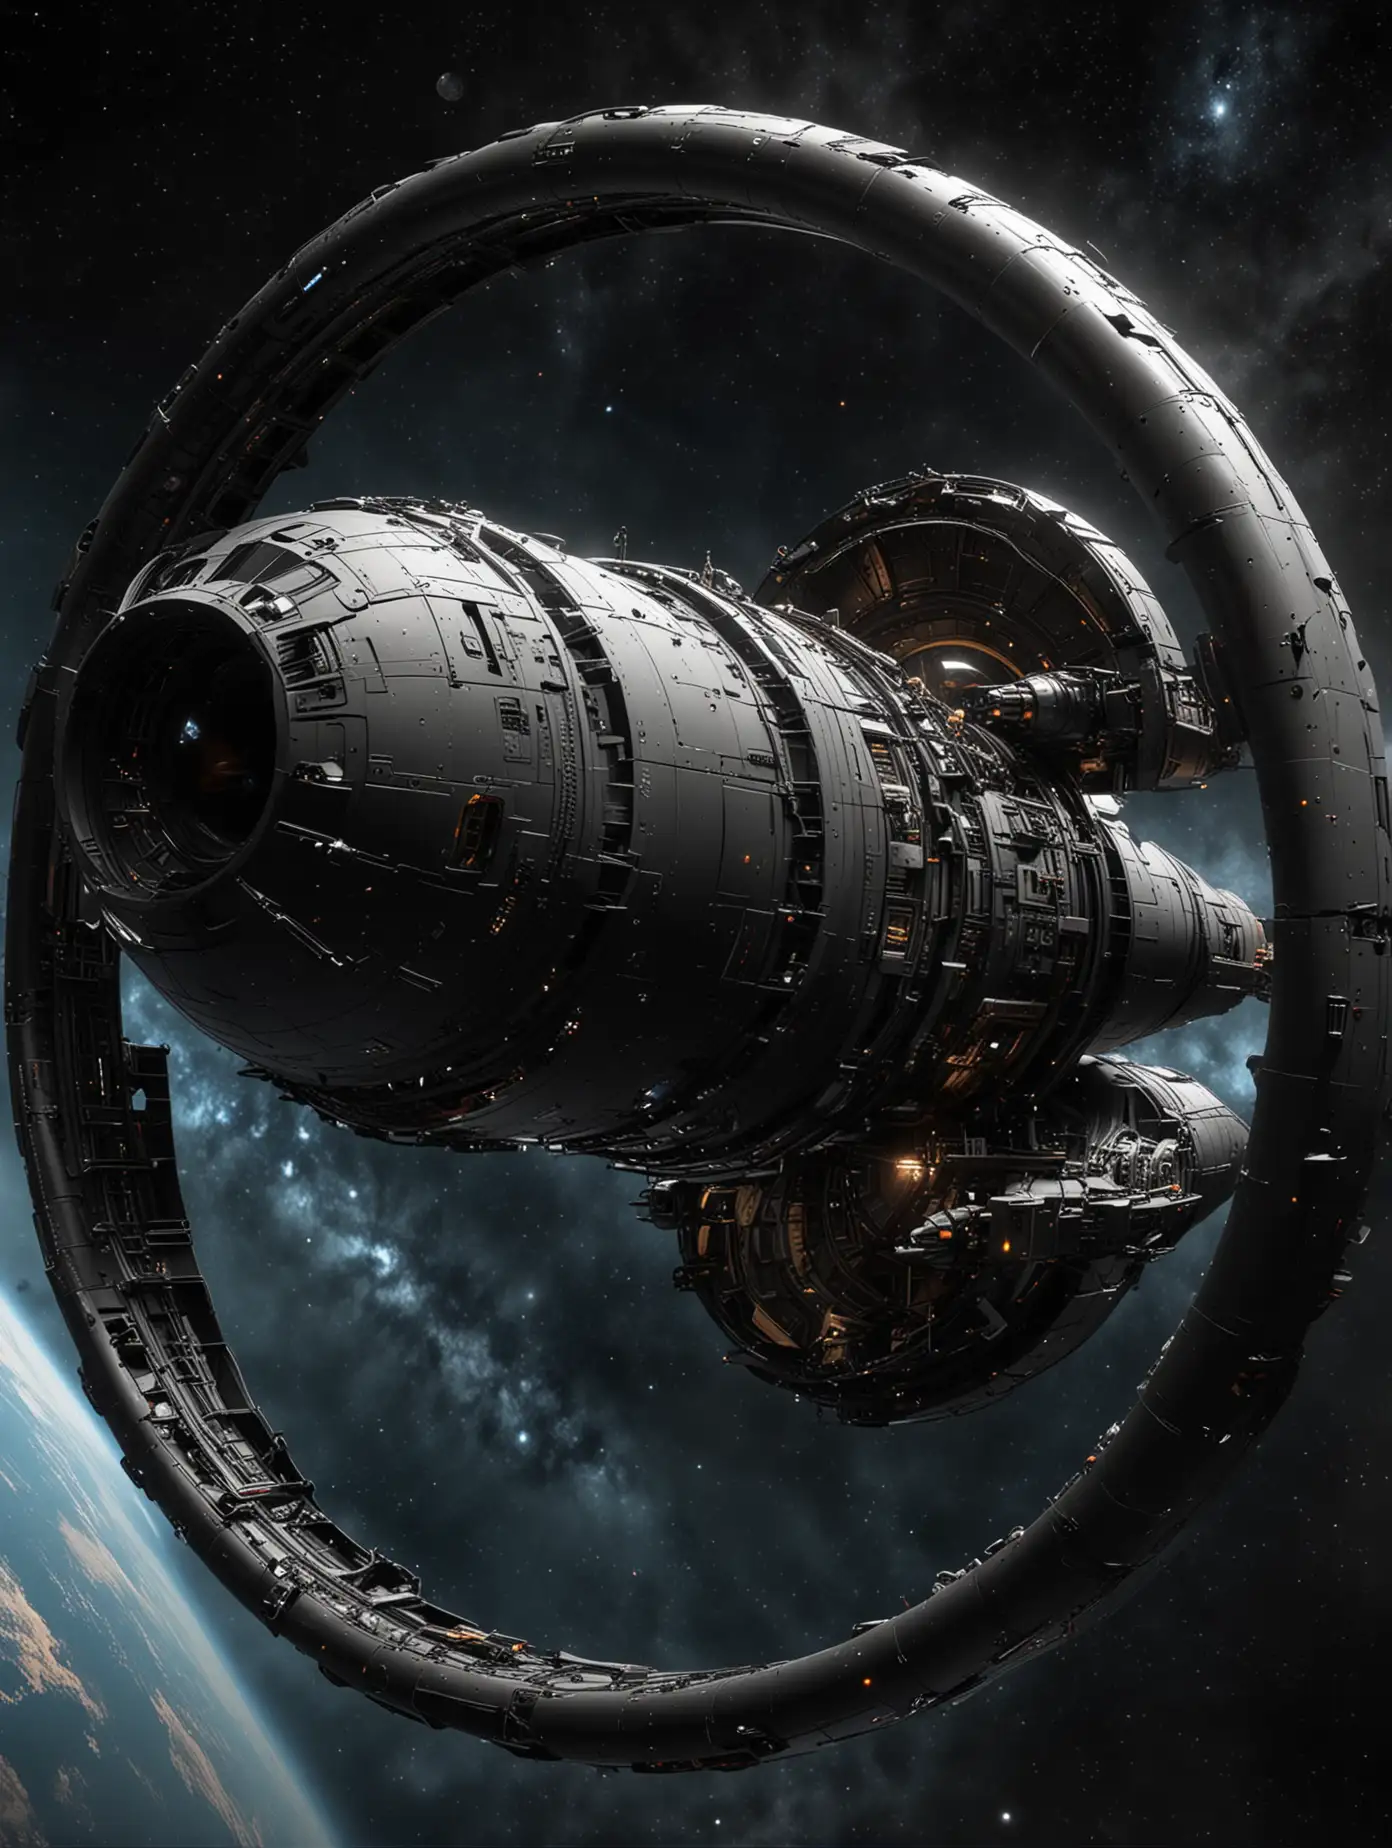 Sleek Black Spaceship with Rotating Ring in Dark Space